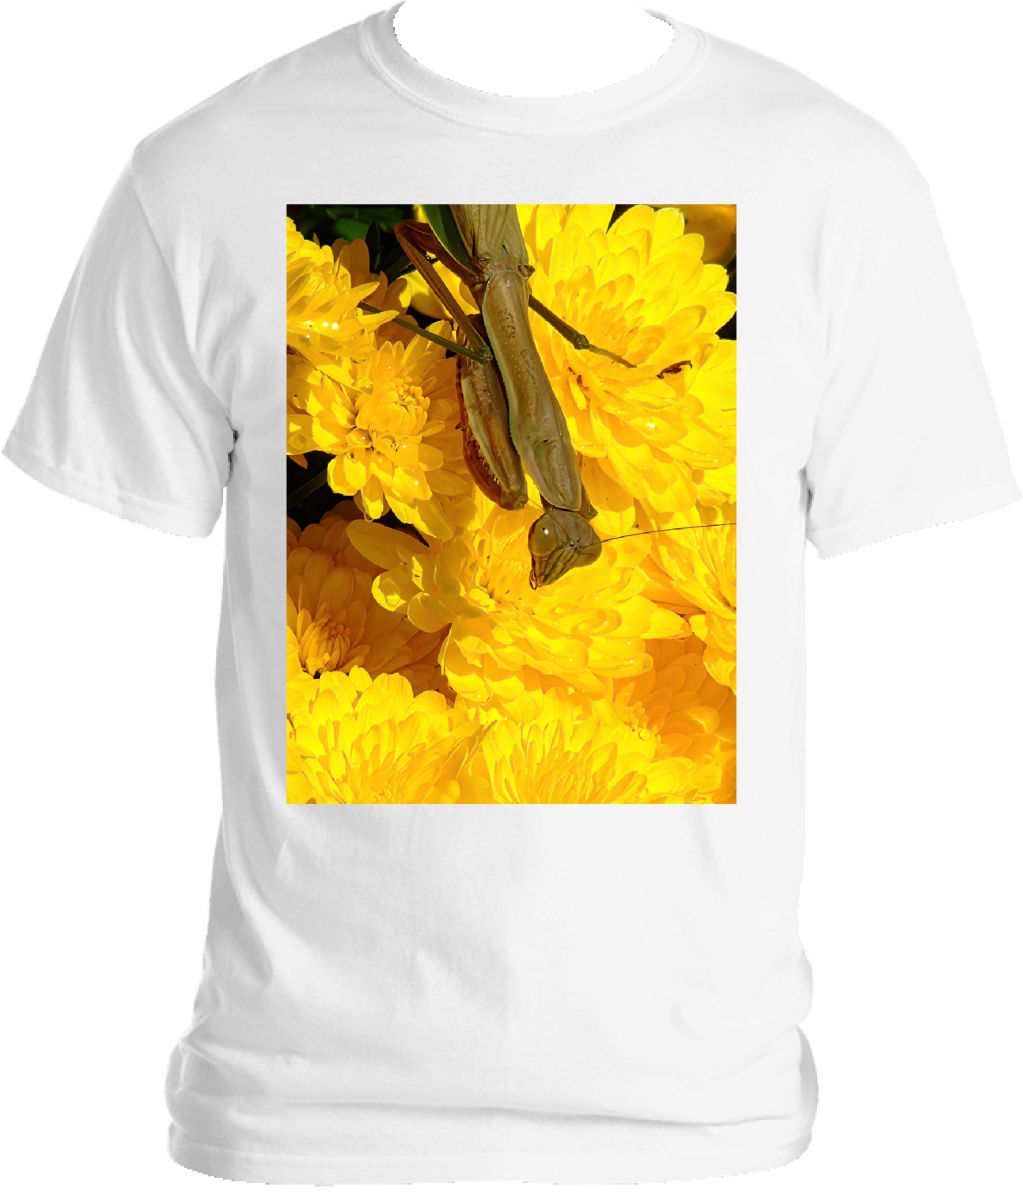 Praying Mantis on Flowers T-shirt